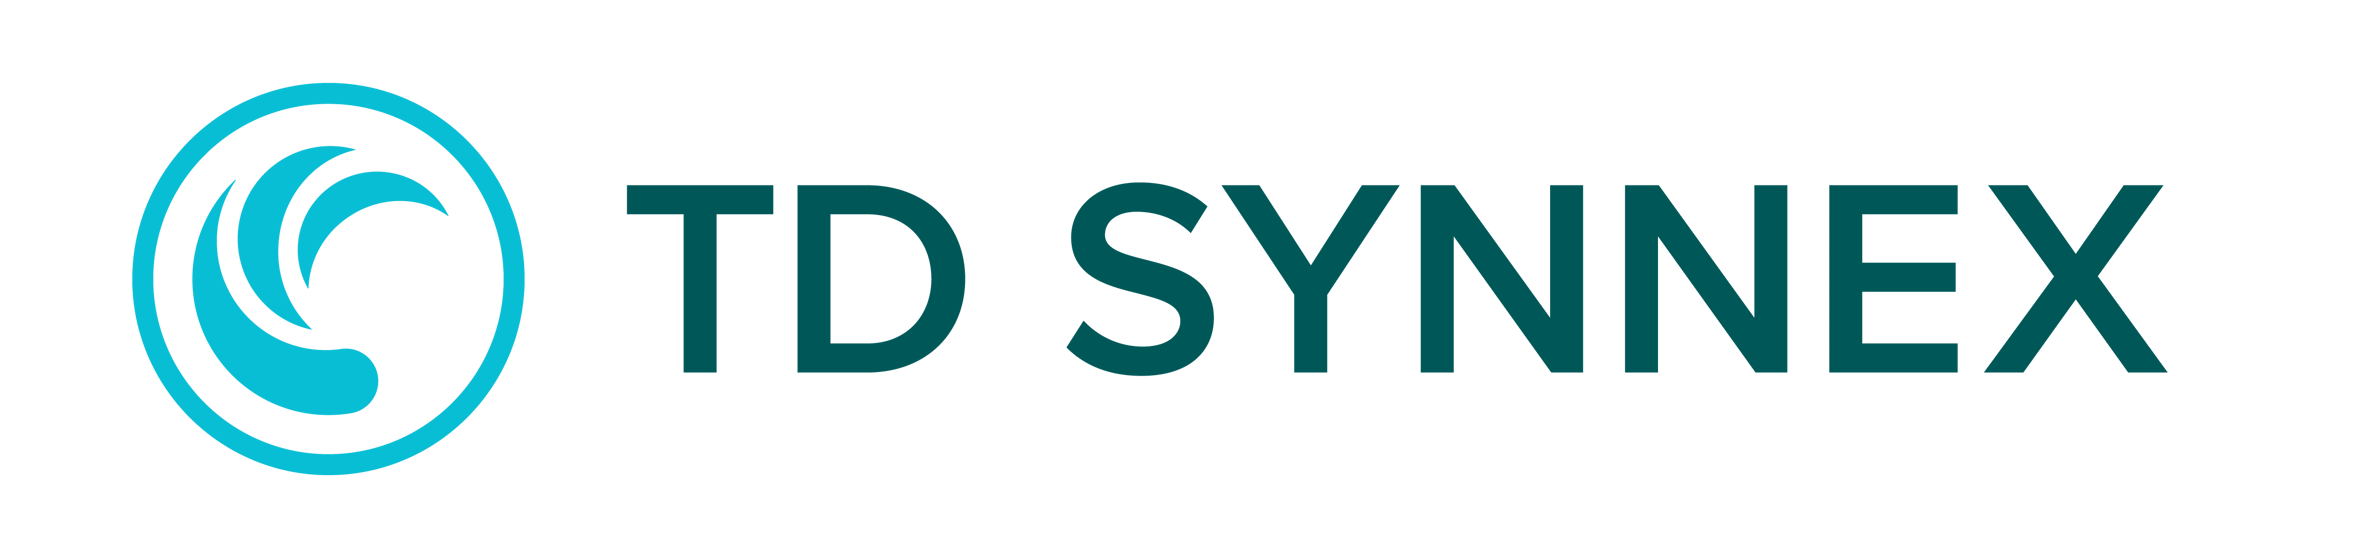 logo_td_synnex_150